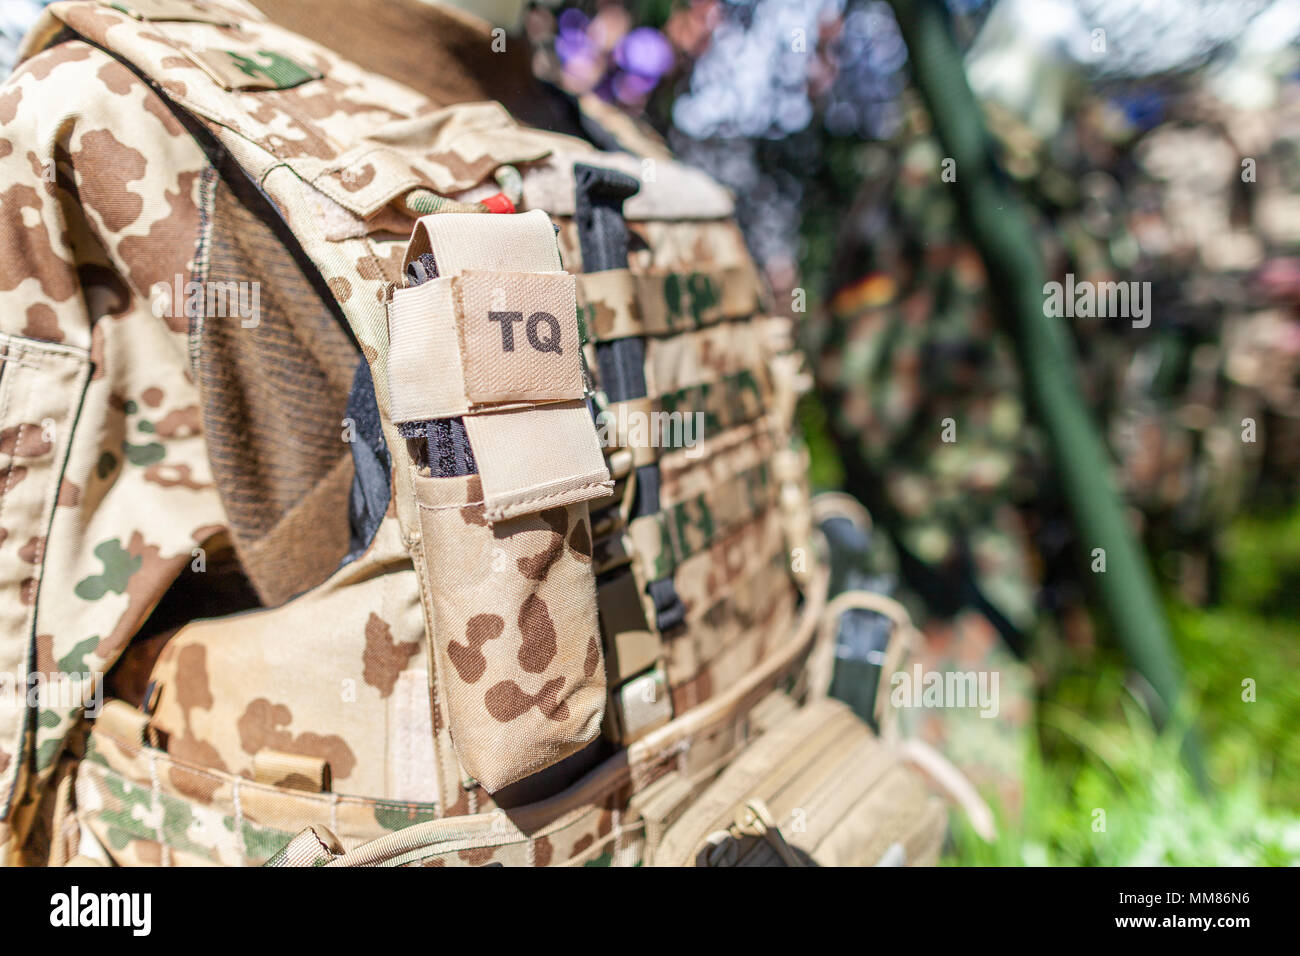 TQ tourniquet bag on a german soldier desert uniform Stock Photo